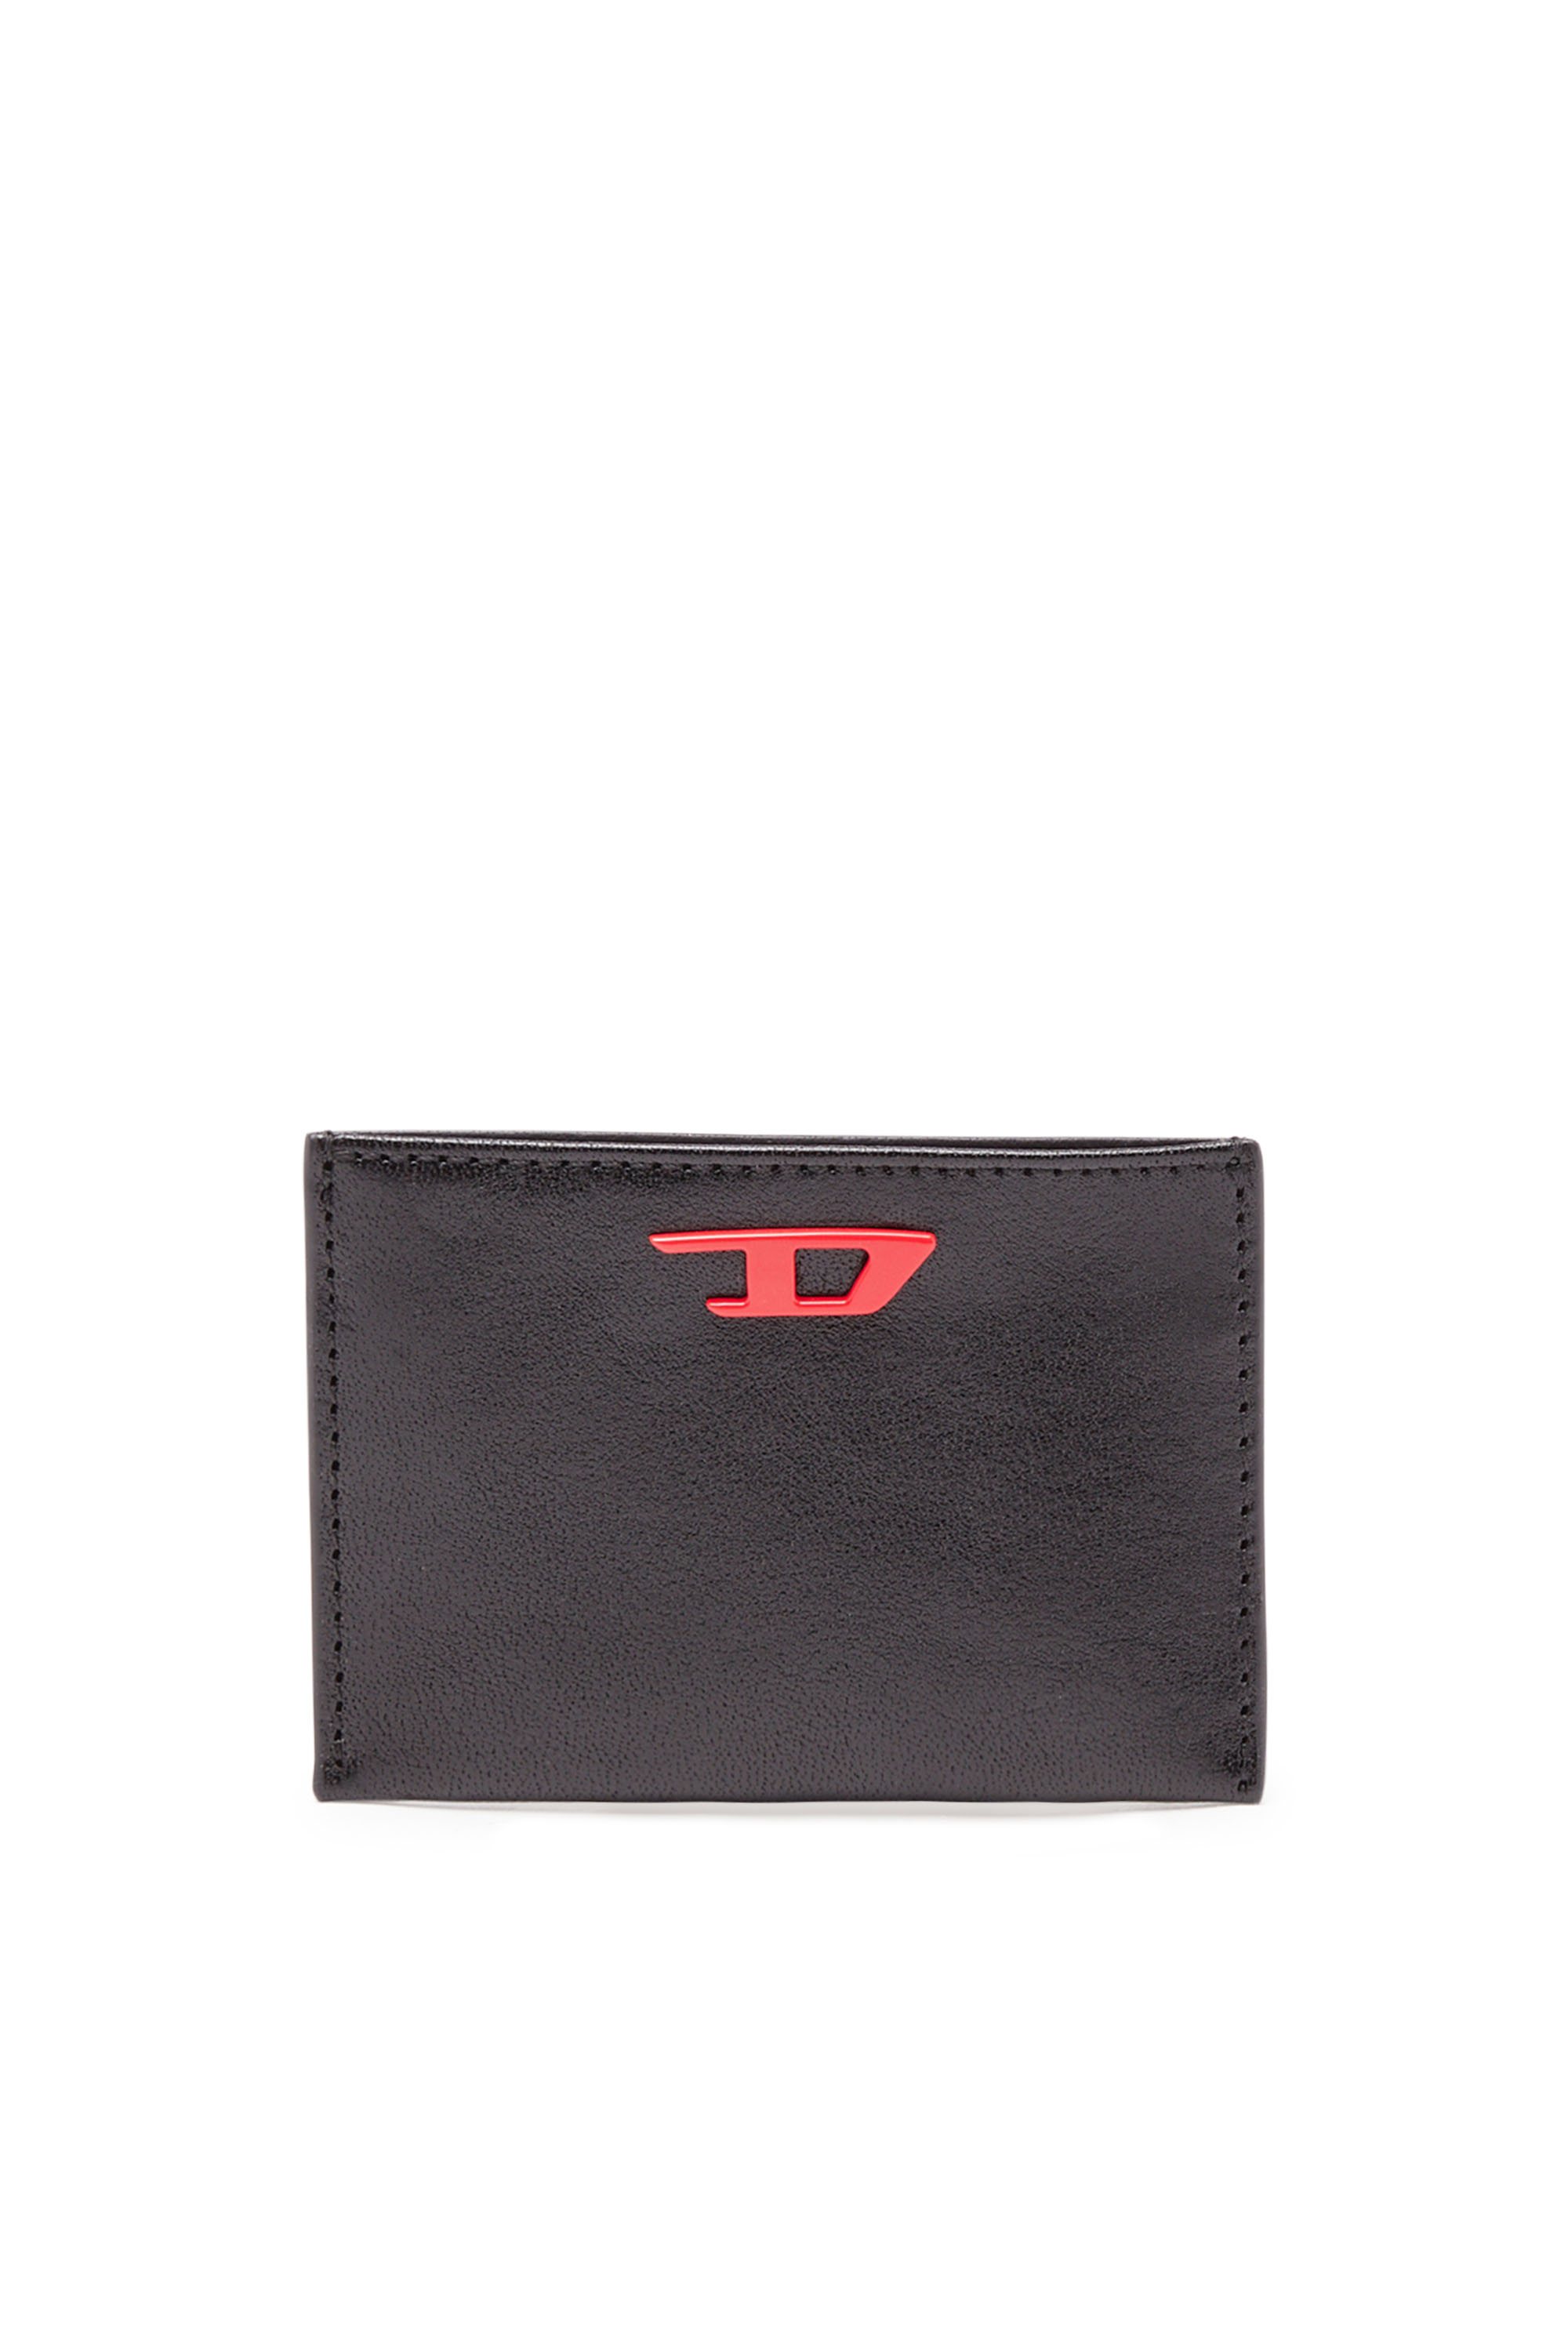 Diesel - Porte-cartes en cuir avec plaque D rouge - Petits Portefeuilles - Homme - Noir